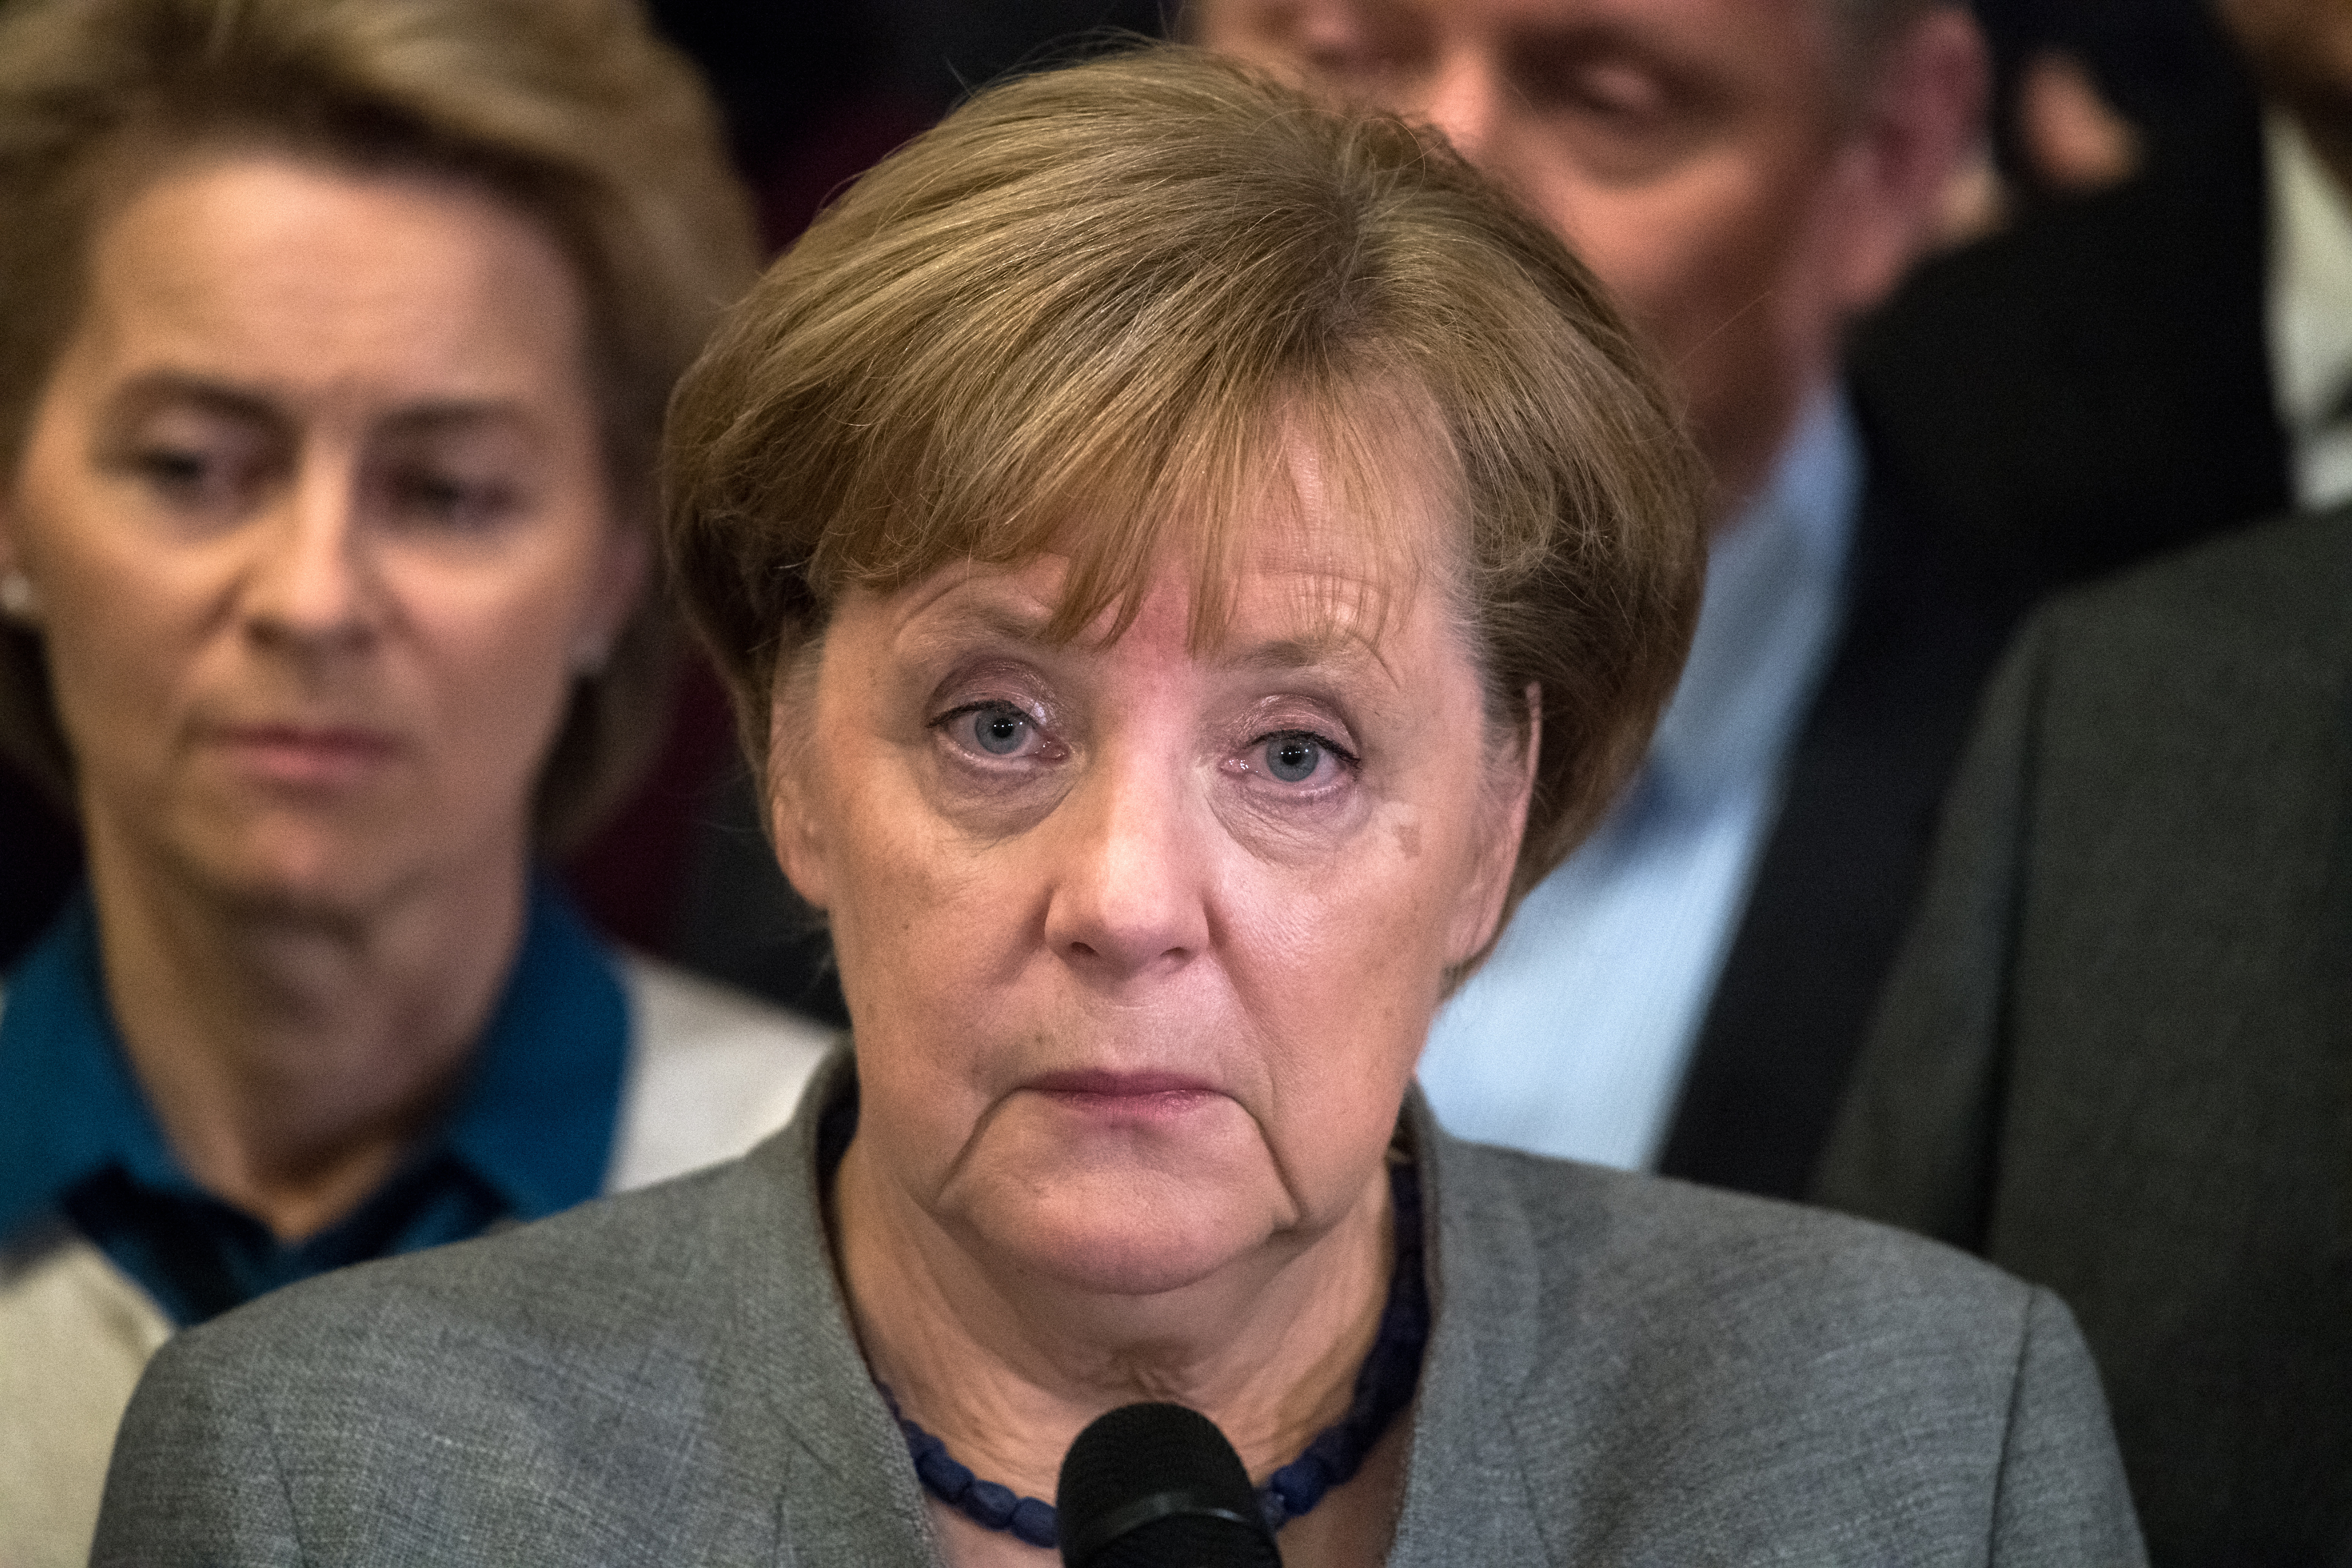 Merkel a kormányalakítási kudarcról: „Nem merült fel, hogy levonjak személyi konzekvenciákat”